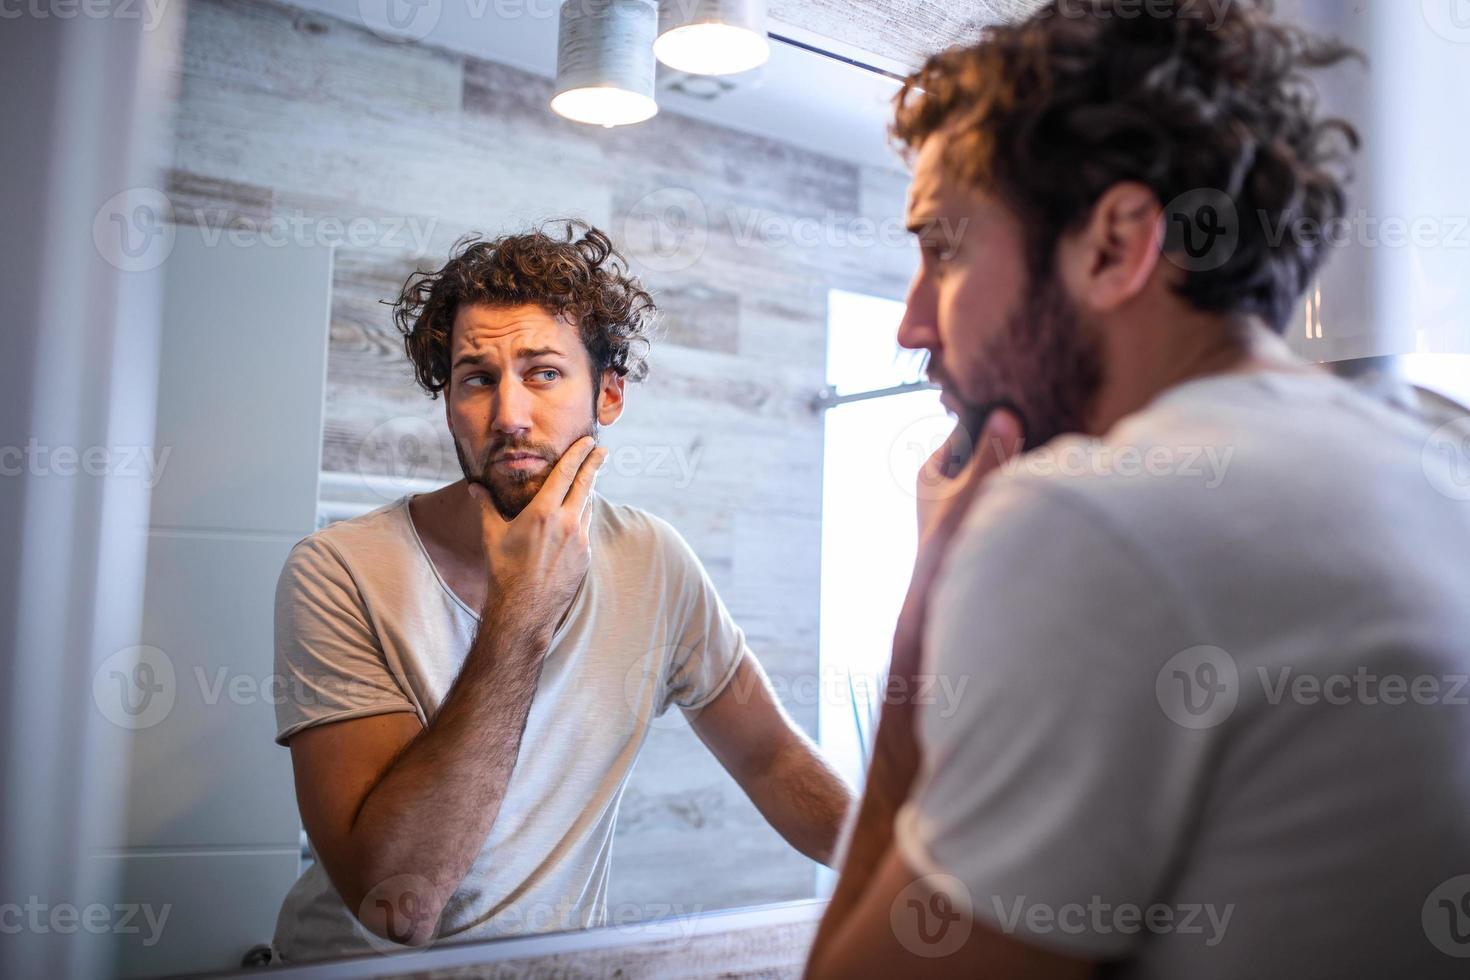 higiene matutina, hombre guapo en el baño mirándose en el espejo. reflejo de un hombre guapo con barba mirando al espejo y tocando la cara en el aseo del baño foto